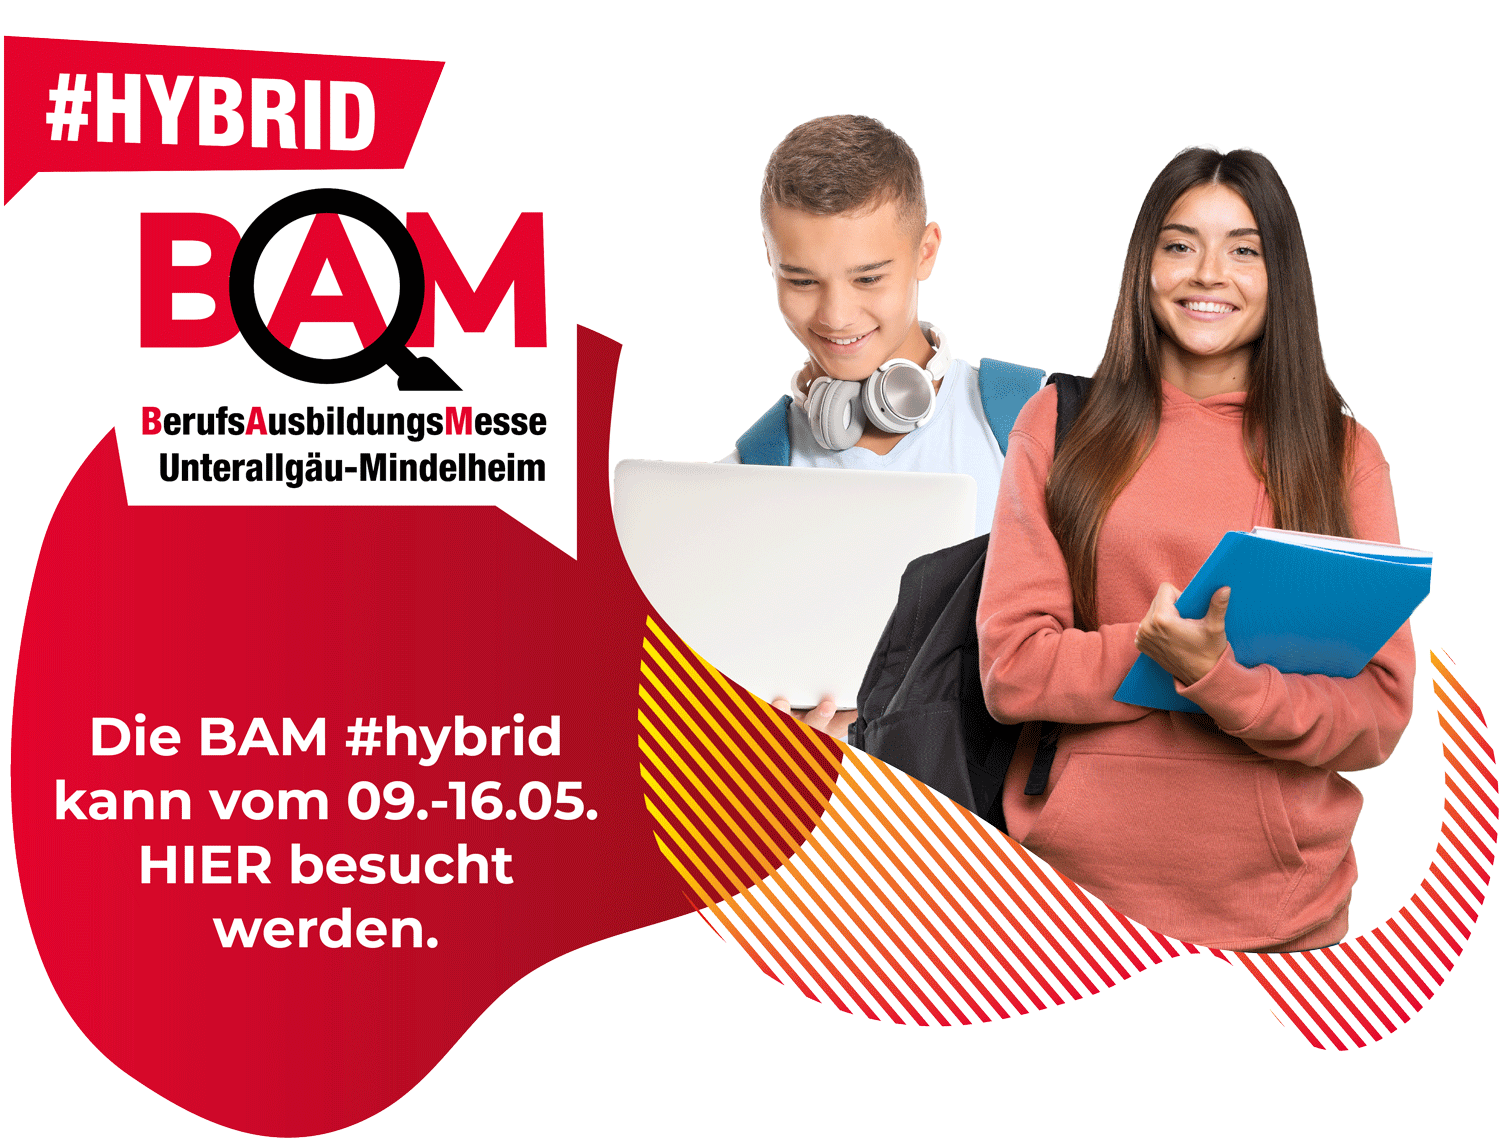 BAM #hybrid Berufsausbildungsmesse Mindelheim 2022